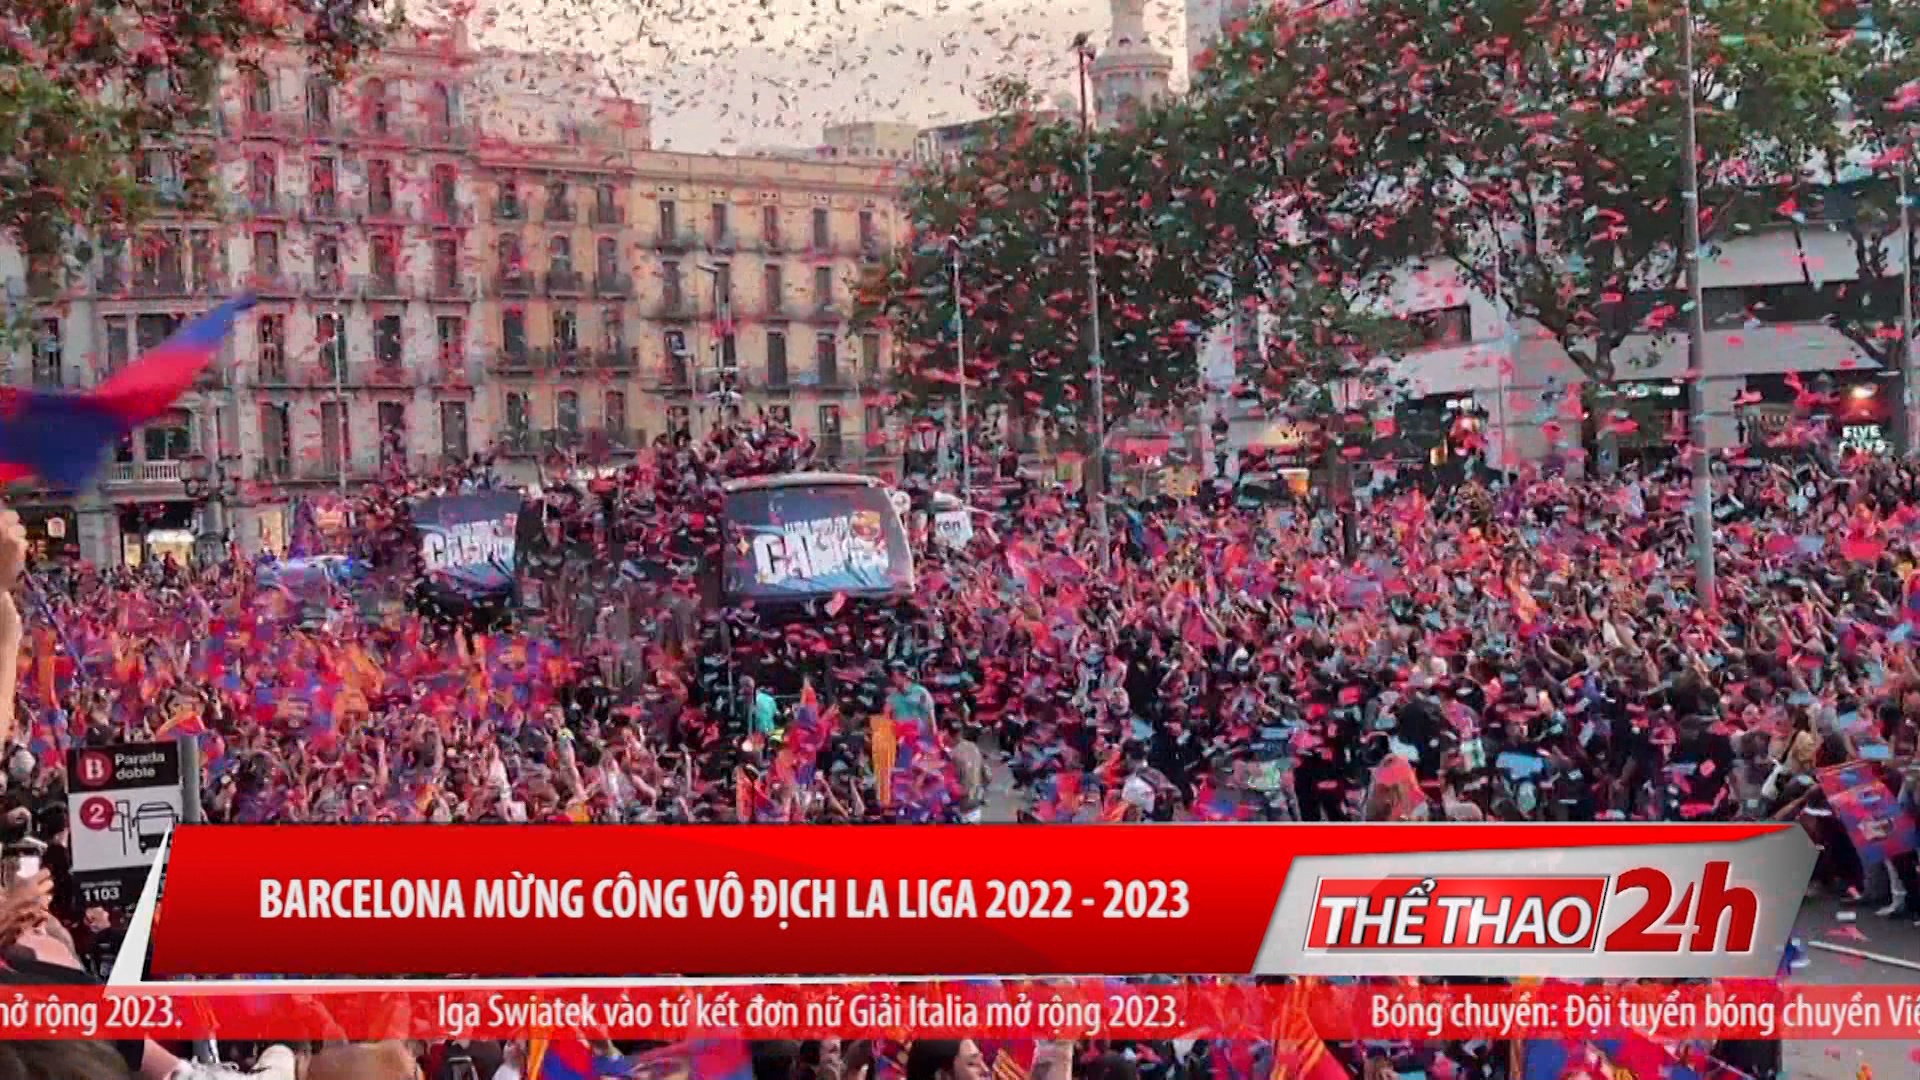 Barcelona mừng công vô địch La liga 2022 -2023